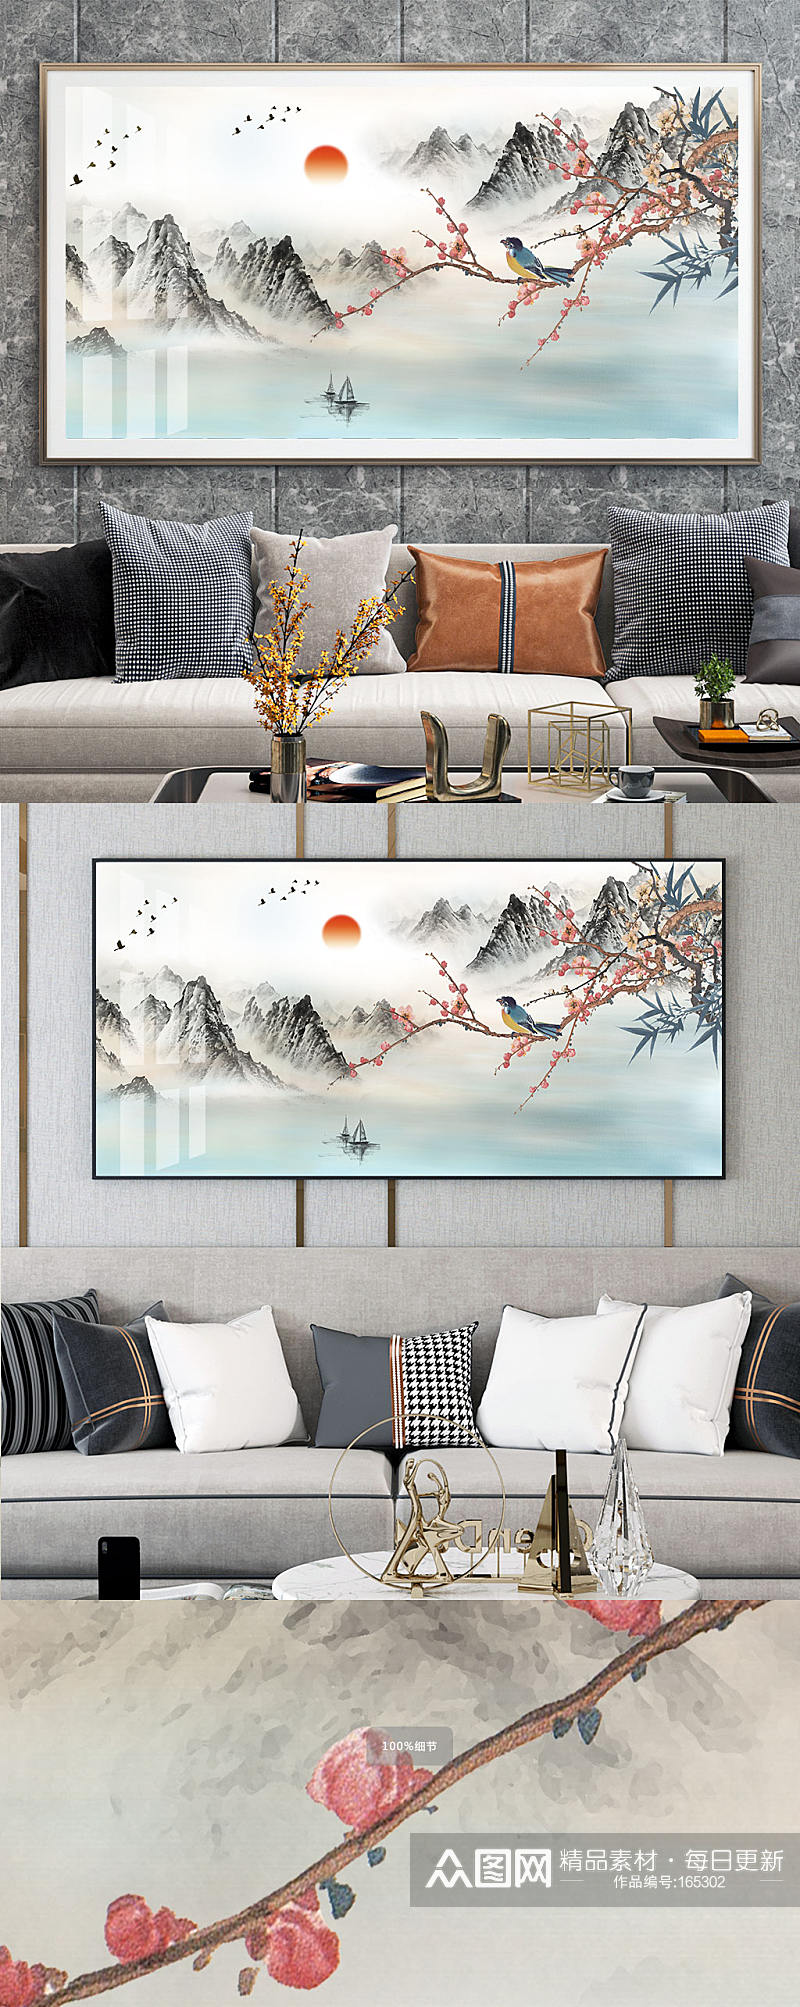 新中式抽象山水麋鹿装饰画素材